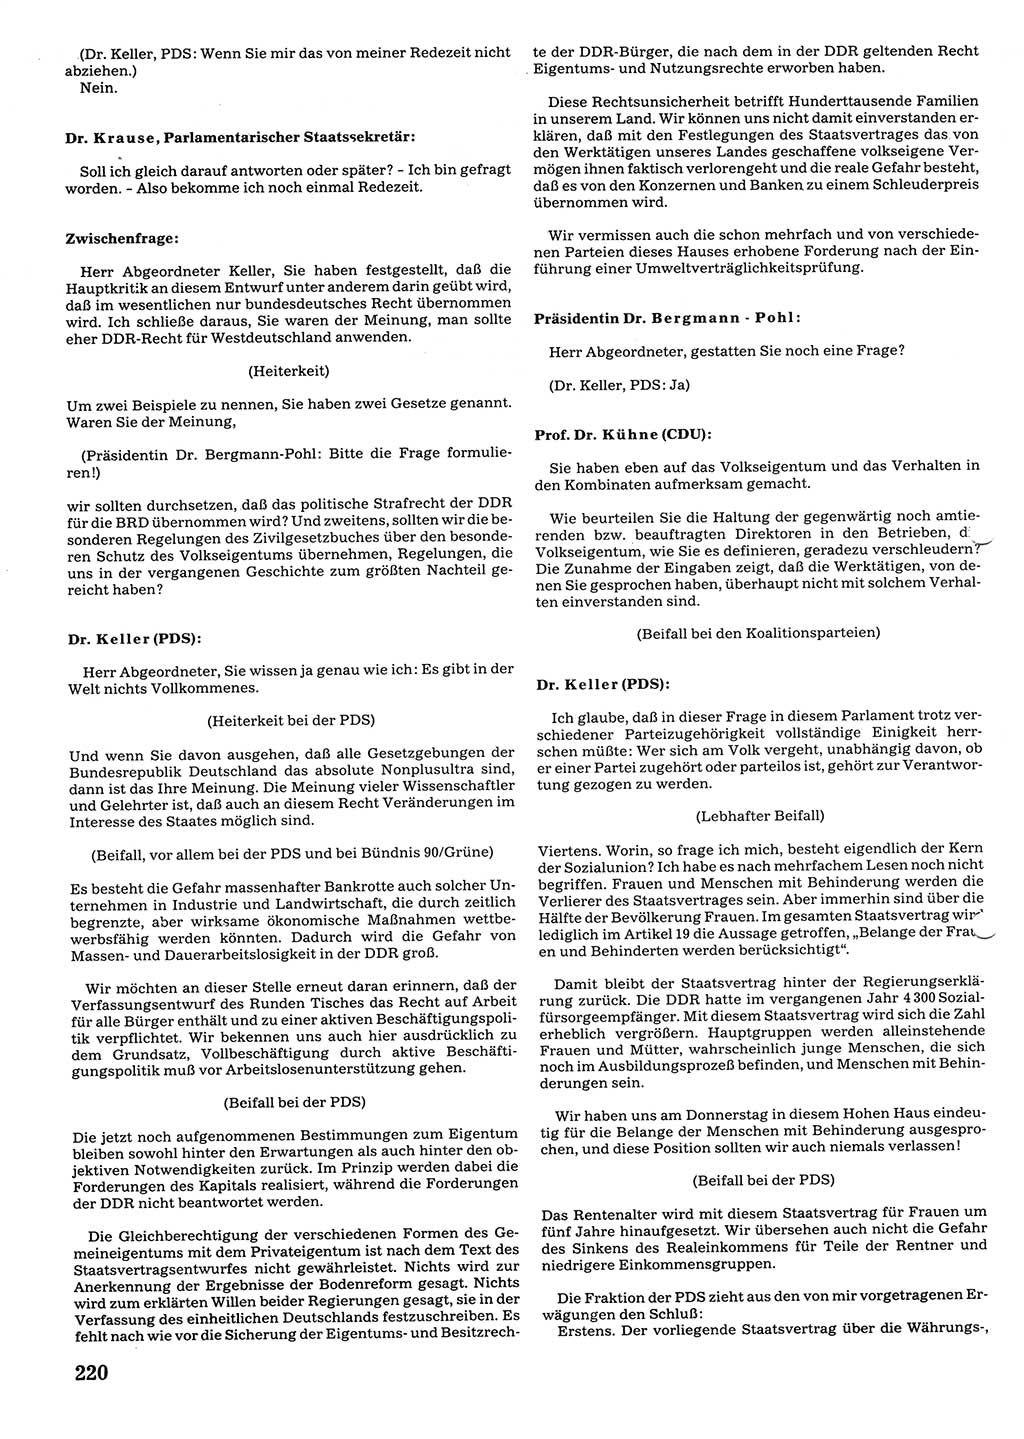 Tagungen der Volkskammer (VK) der Deutschen Demokratischen Republik (DDR), 10. Wahlperiode 1990, Seite 220 (VK. DDR 10. WP. 1990, Prot. Tg. 1-38, 5.4.-2.10.1990, S. 220)